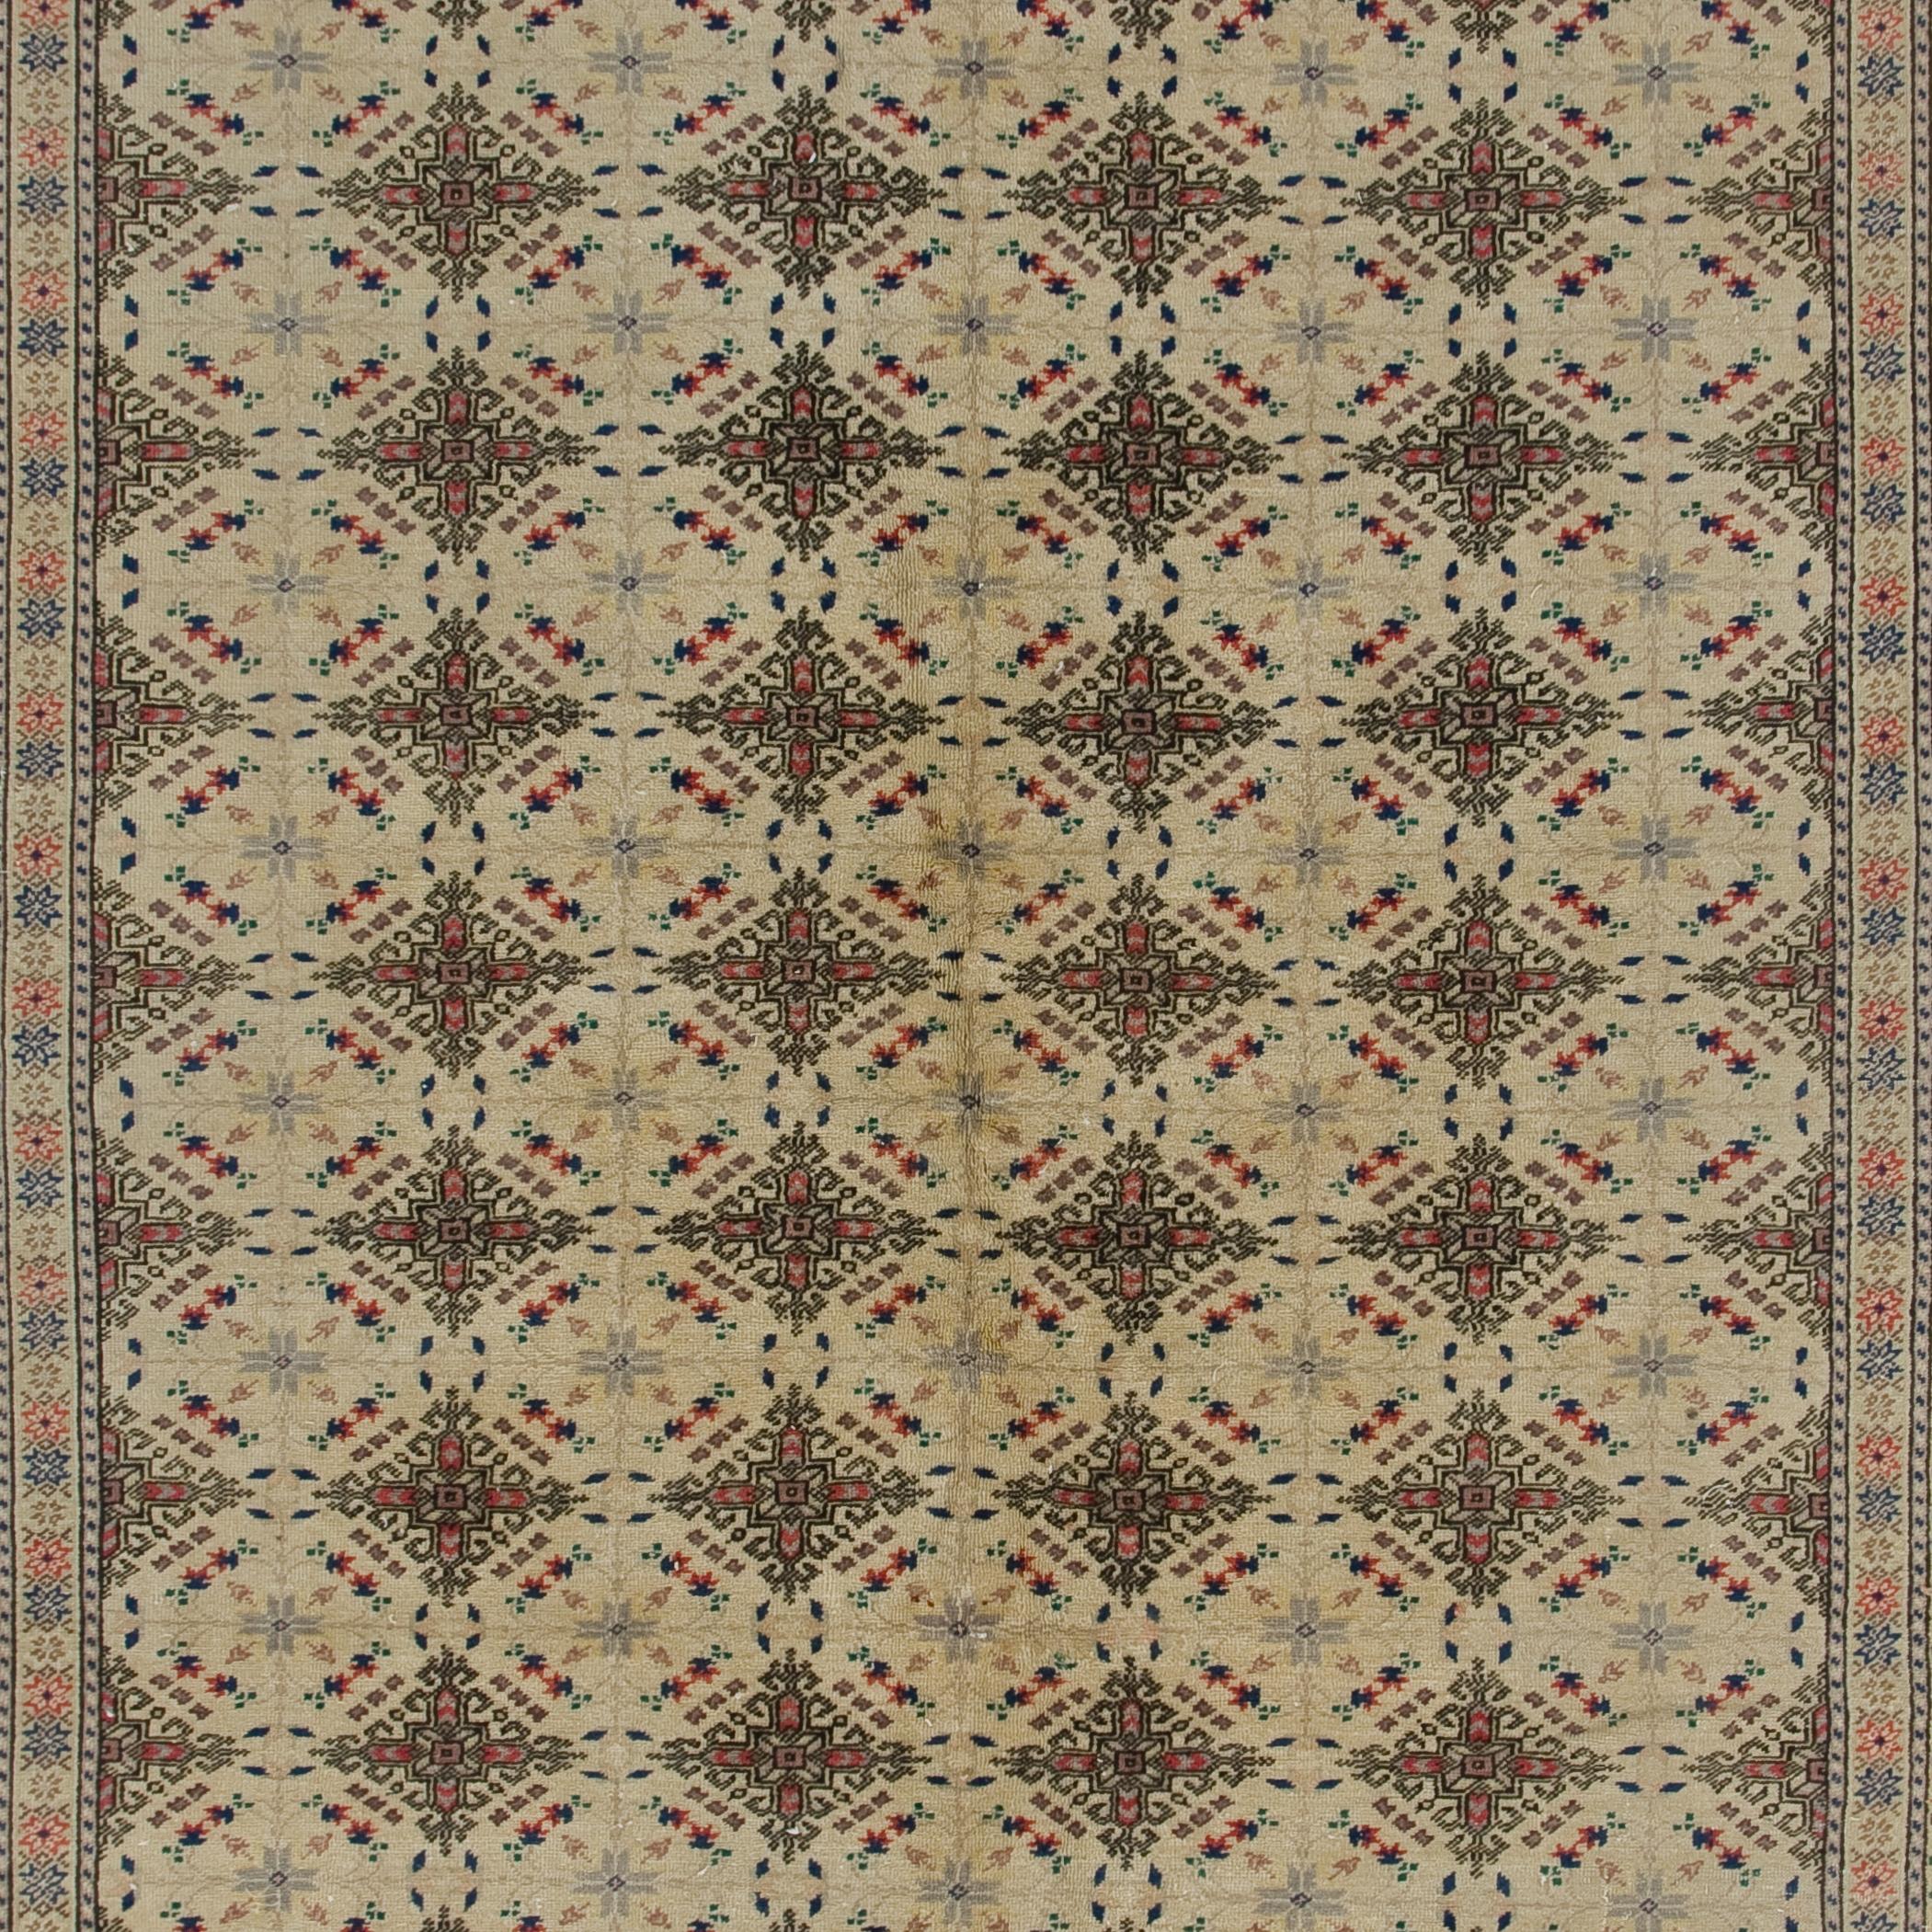 Turkish 6.2x9.5 Ft Vintage Handmade Wool Area Rug from Kayseri / Turkey, Ca 1940 For Sale